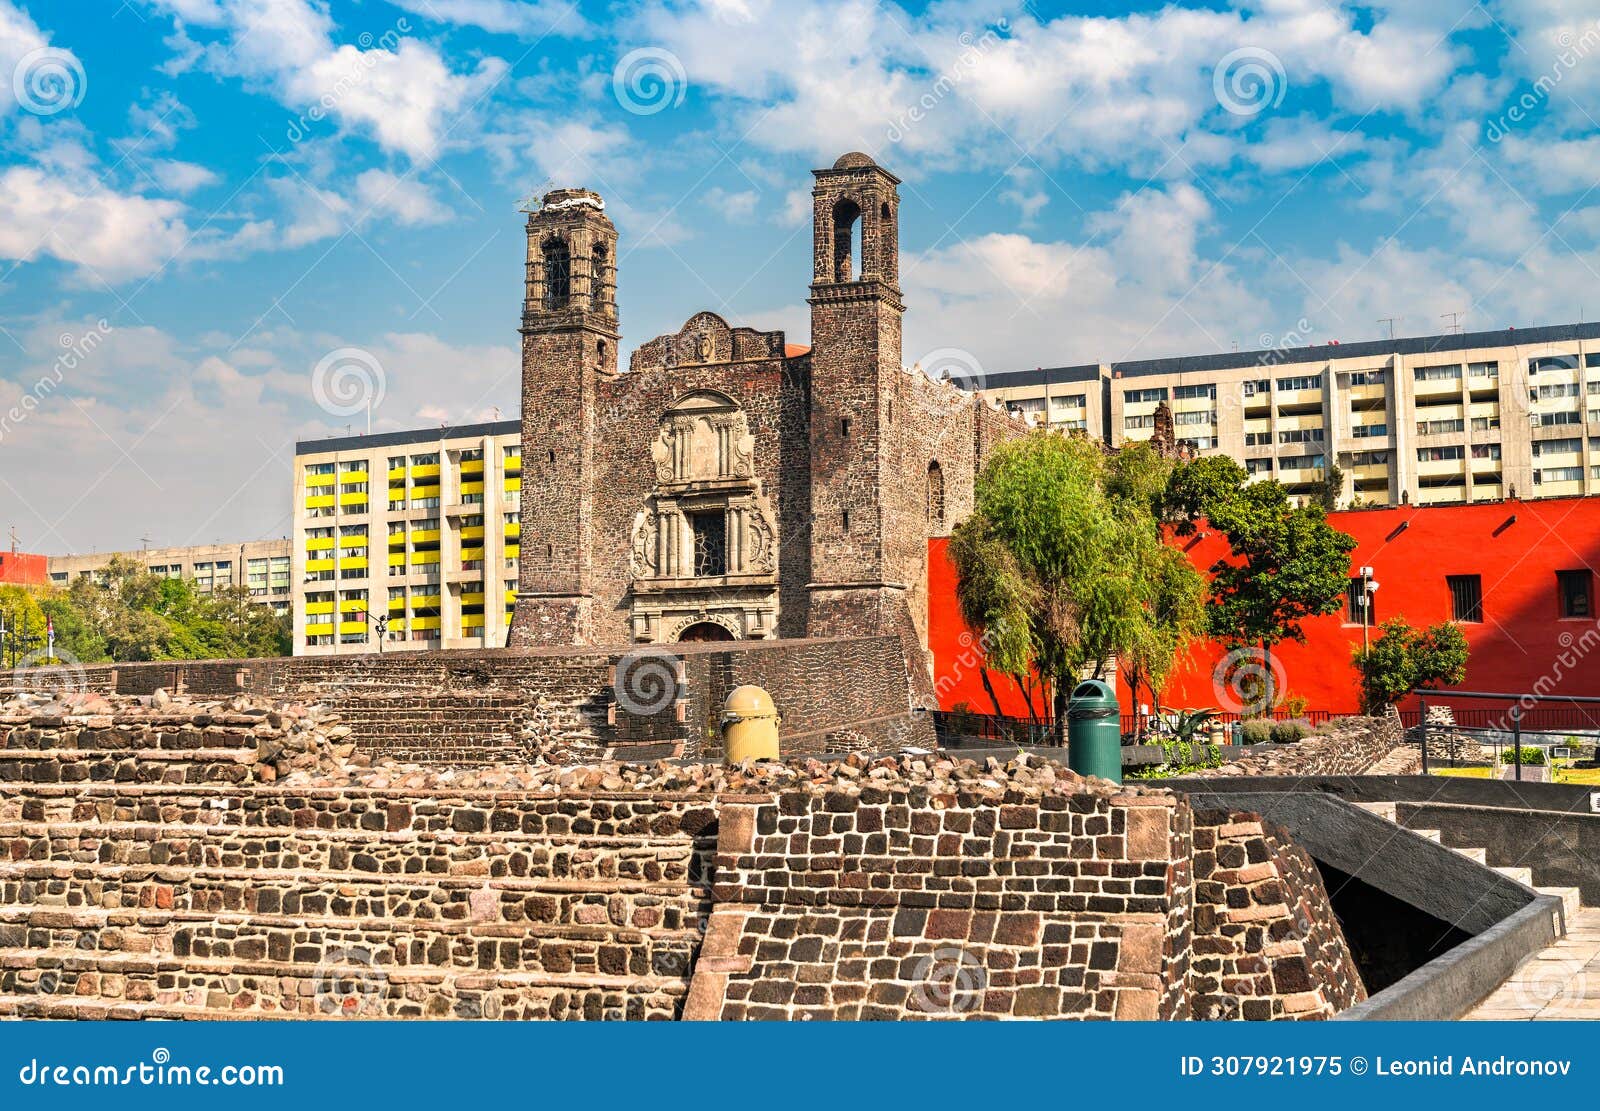 temple of santiago at tlatelolco - mexico city, mexico